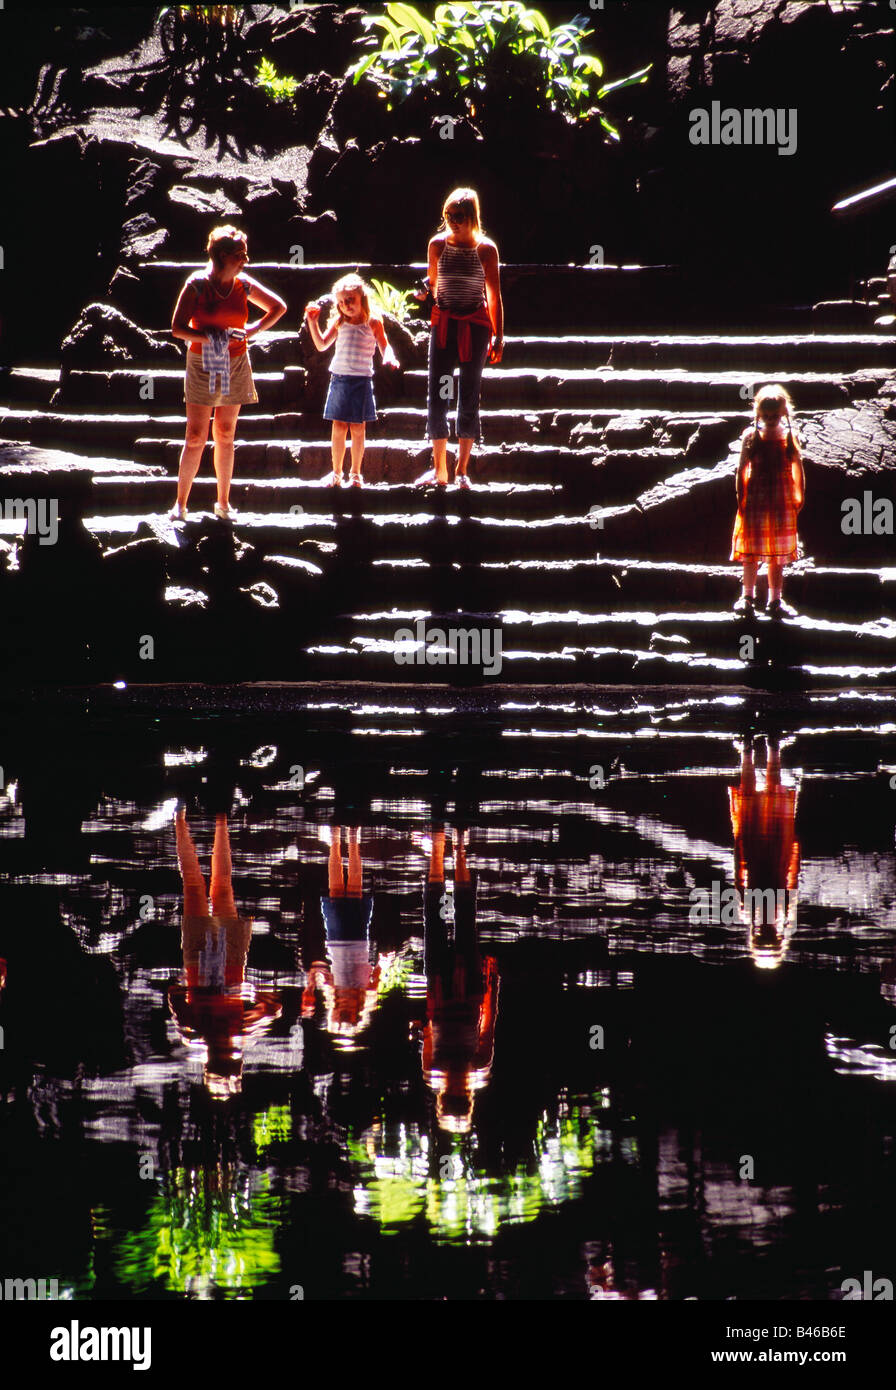 Quatre personnes et leurs réflexions sur l'eau. Grotte de Jameos del Agua. L'île de Lanzarote. Îles Canaries. L'Espagne. Banque D'Images